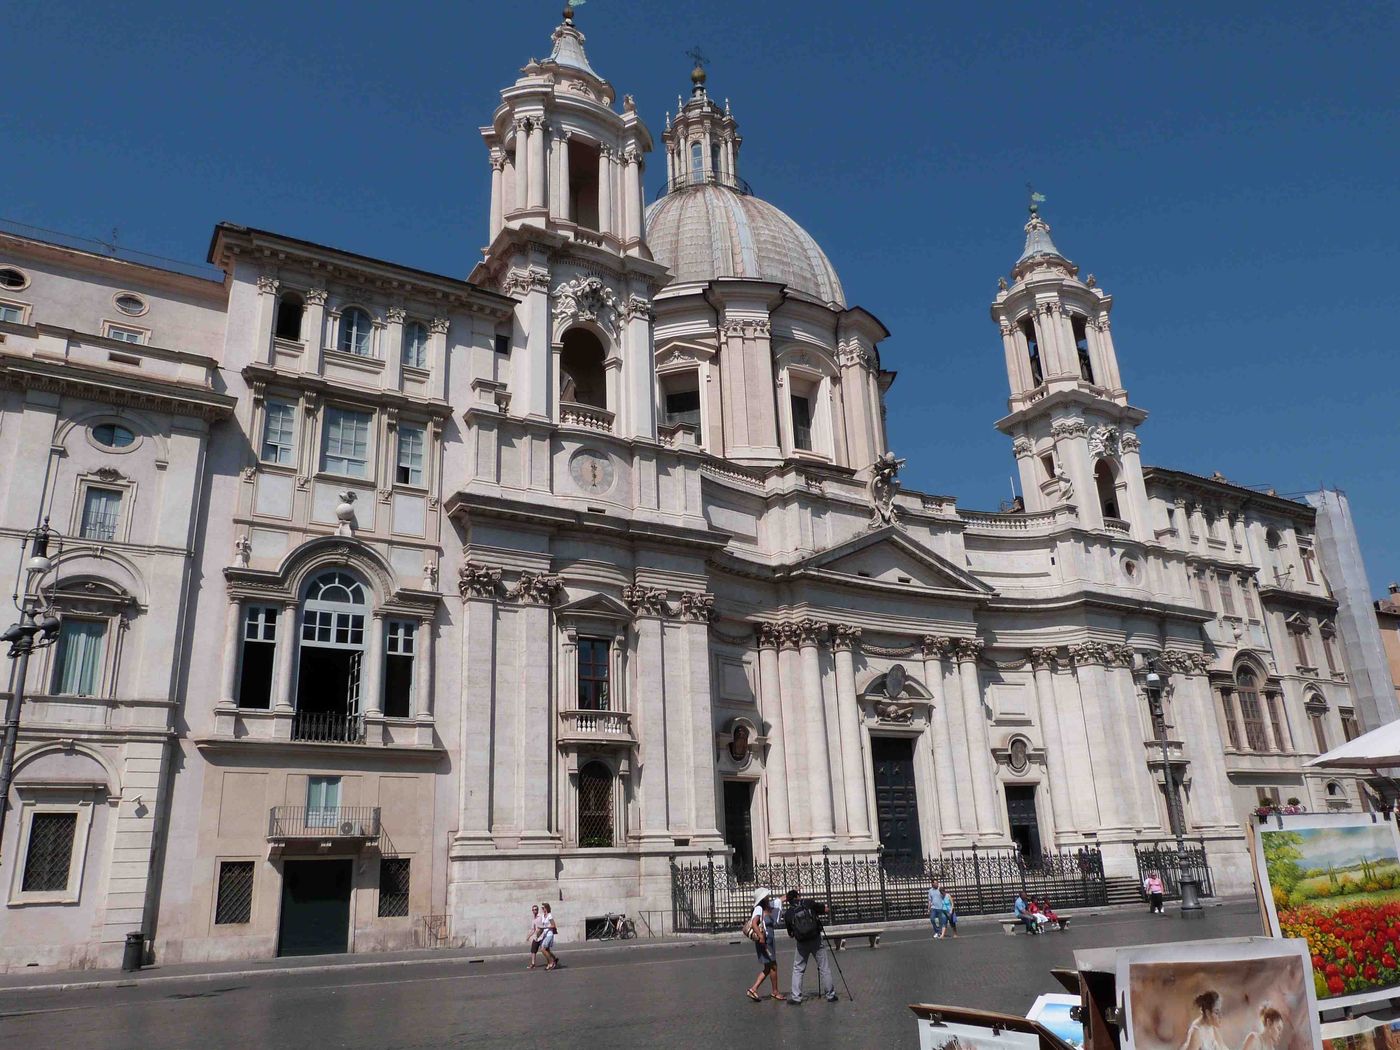 Visiter Chiesa Sant'Agnese in Agone : préparez votre séjour et voyage ...